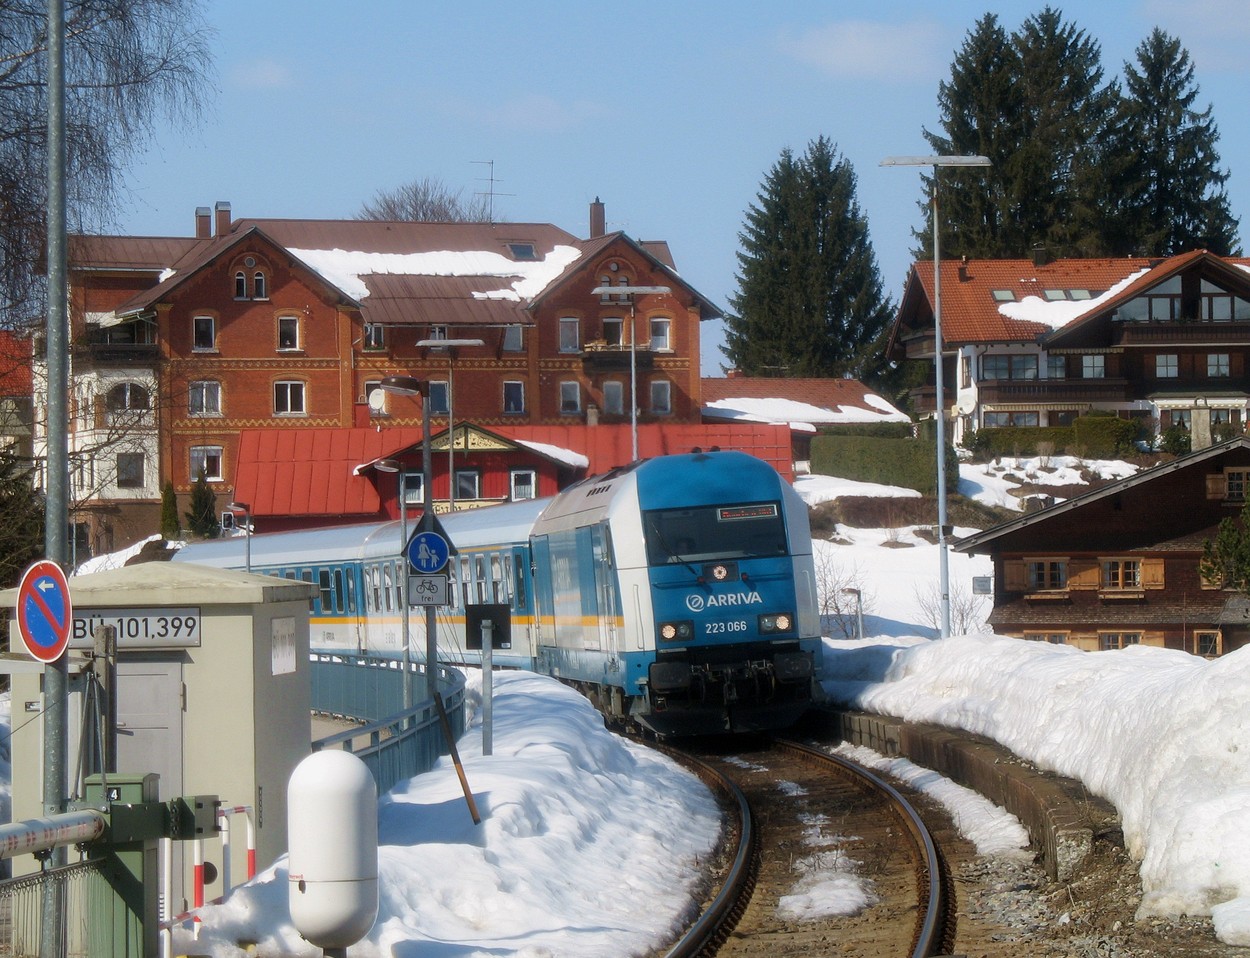 http://www.eisenbahn-im-bild.de/Temp/A_09_Oberstau_IMG_6251.jpg